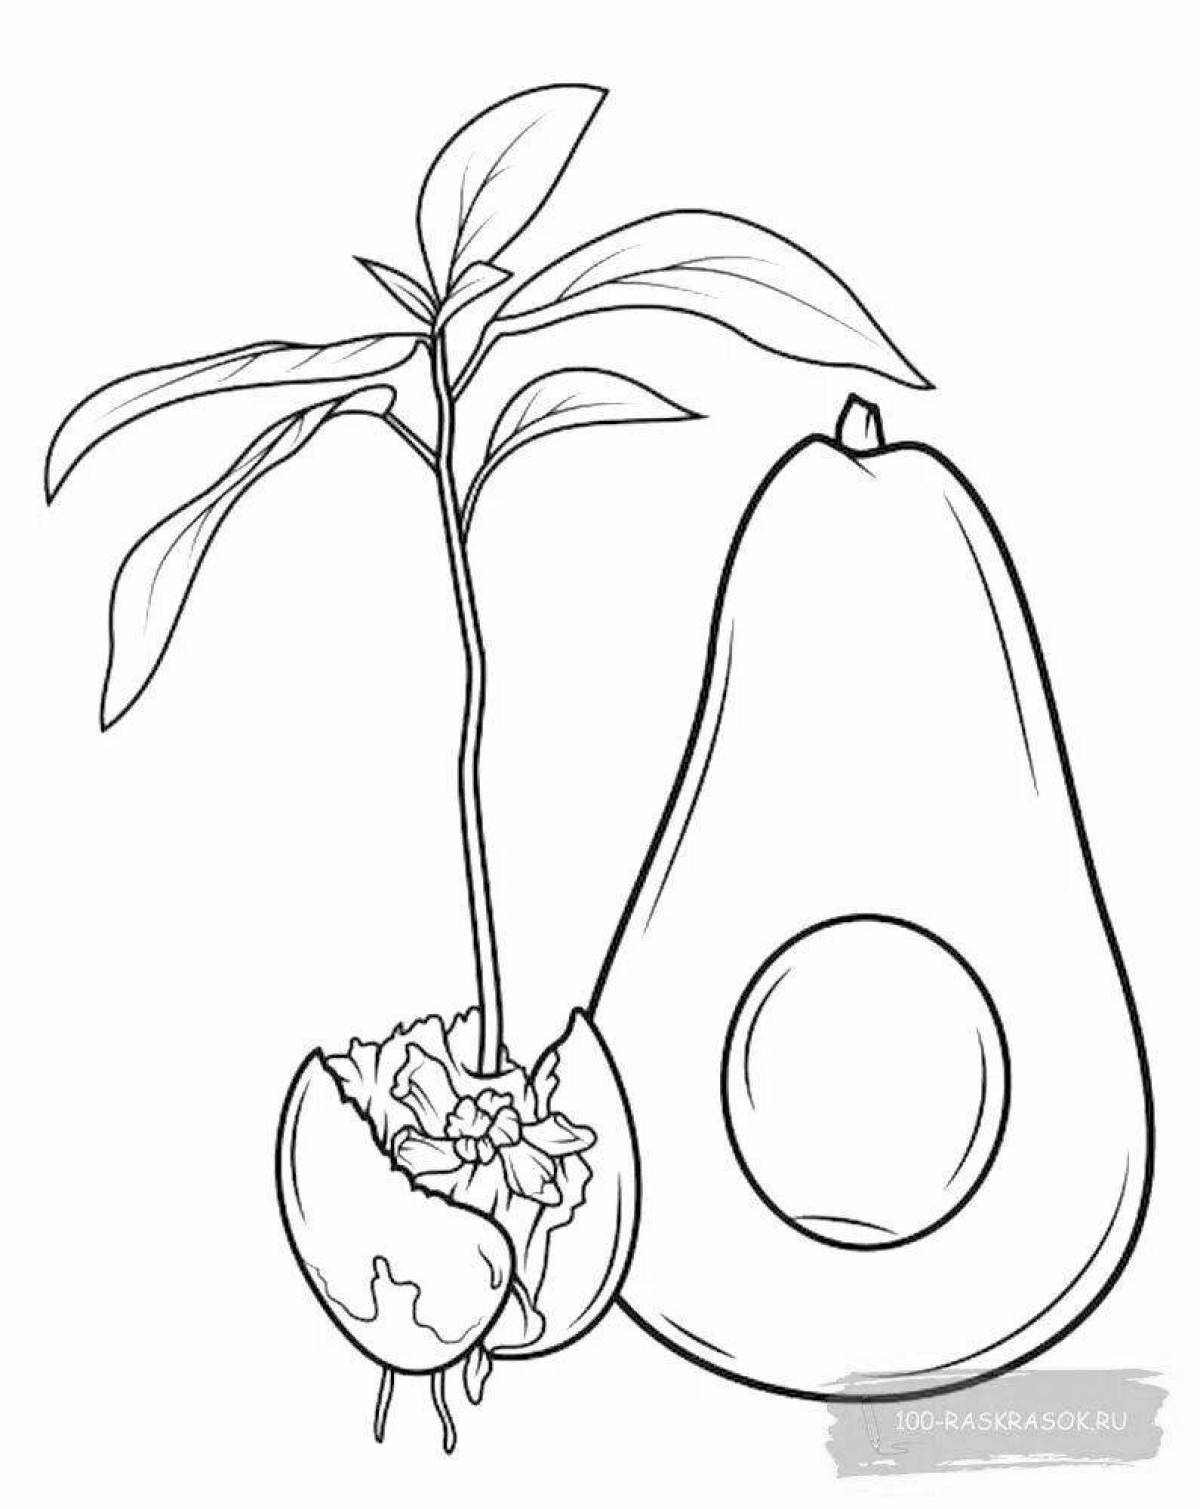 Раскраска экзотического авокадо